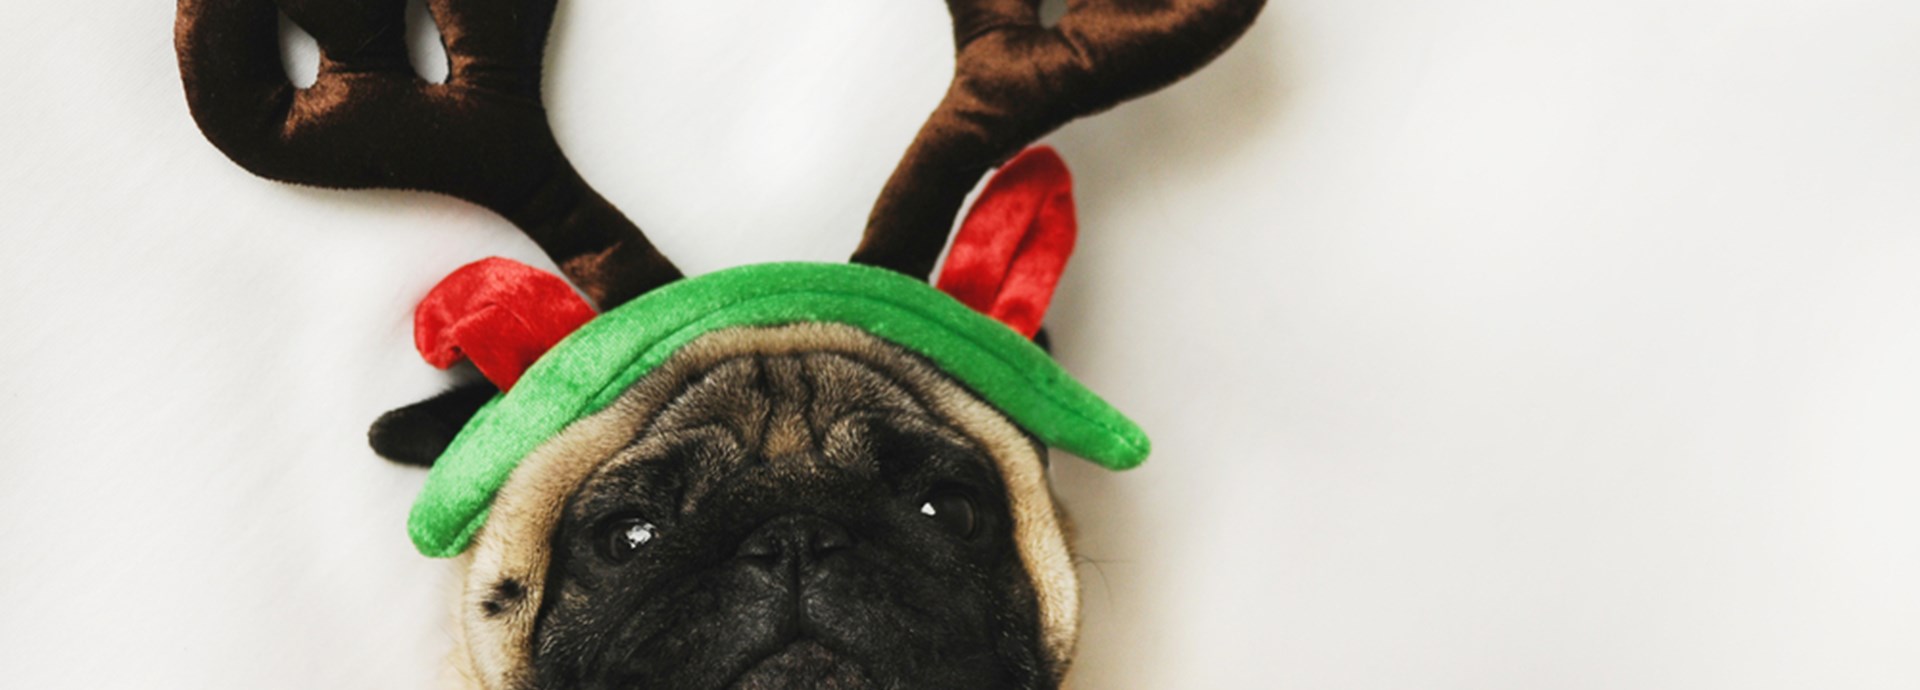 Pug dog with Christmas dress up